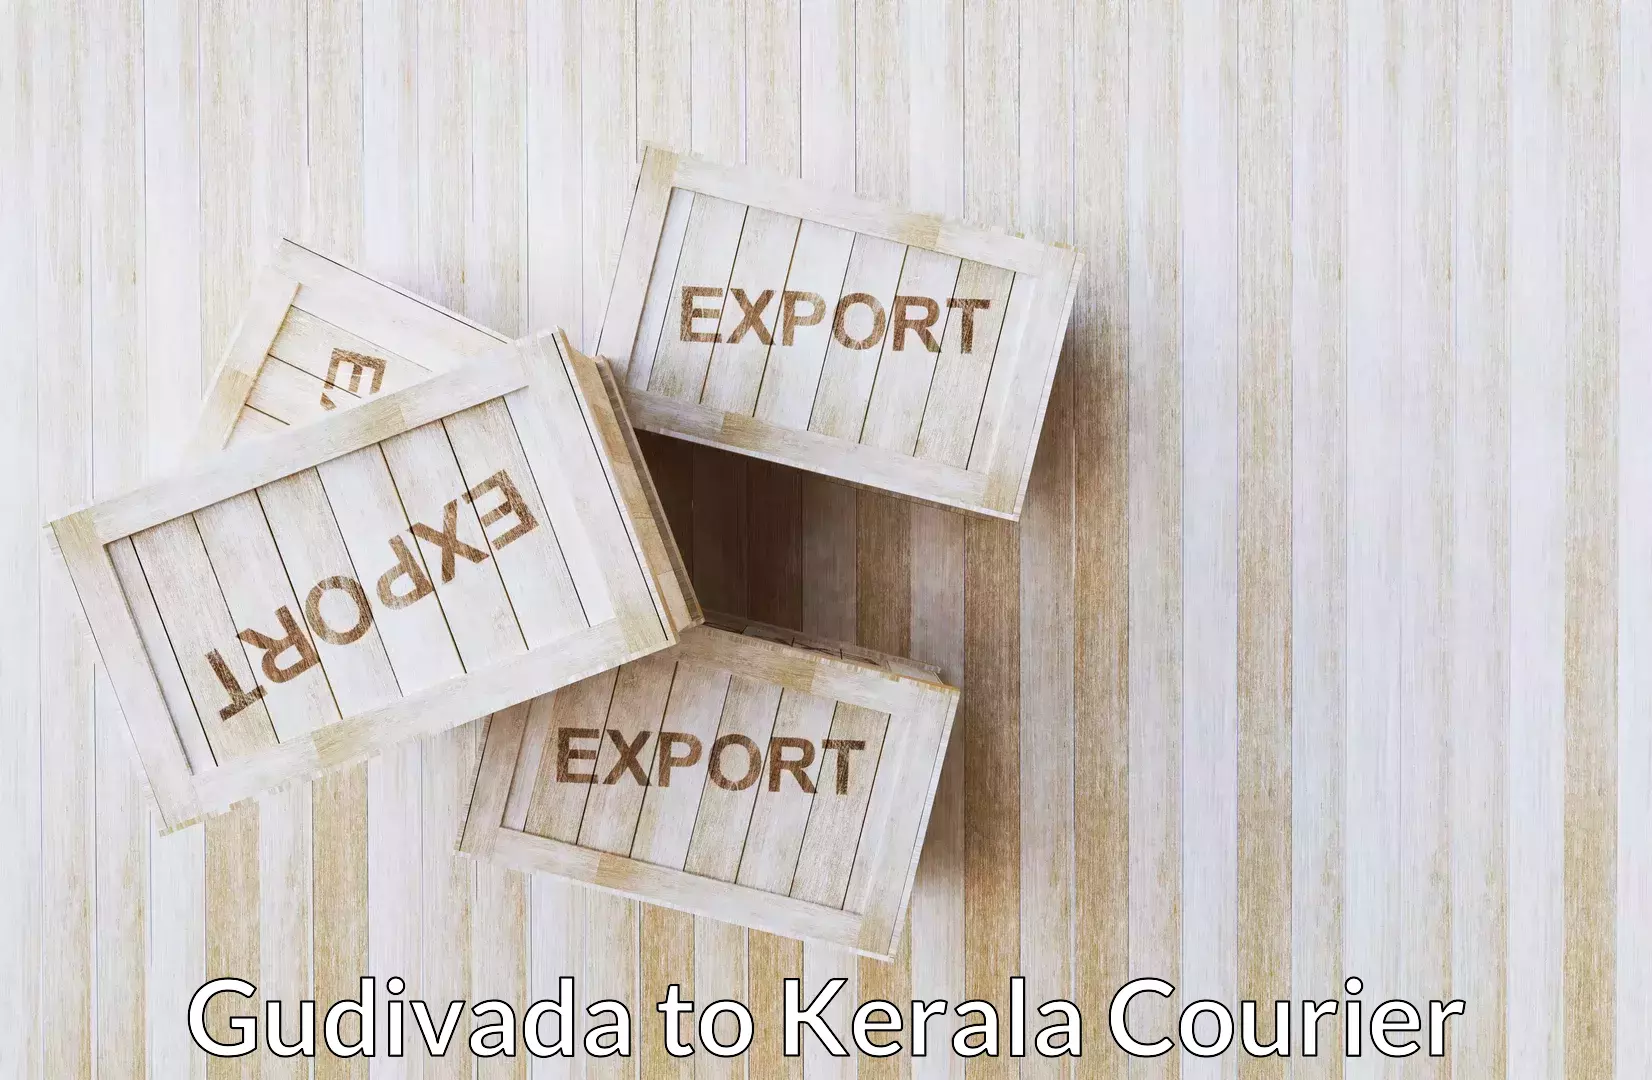 Efficient relocation services Gudivada to Cochin Port Kochi